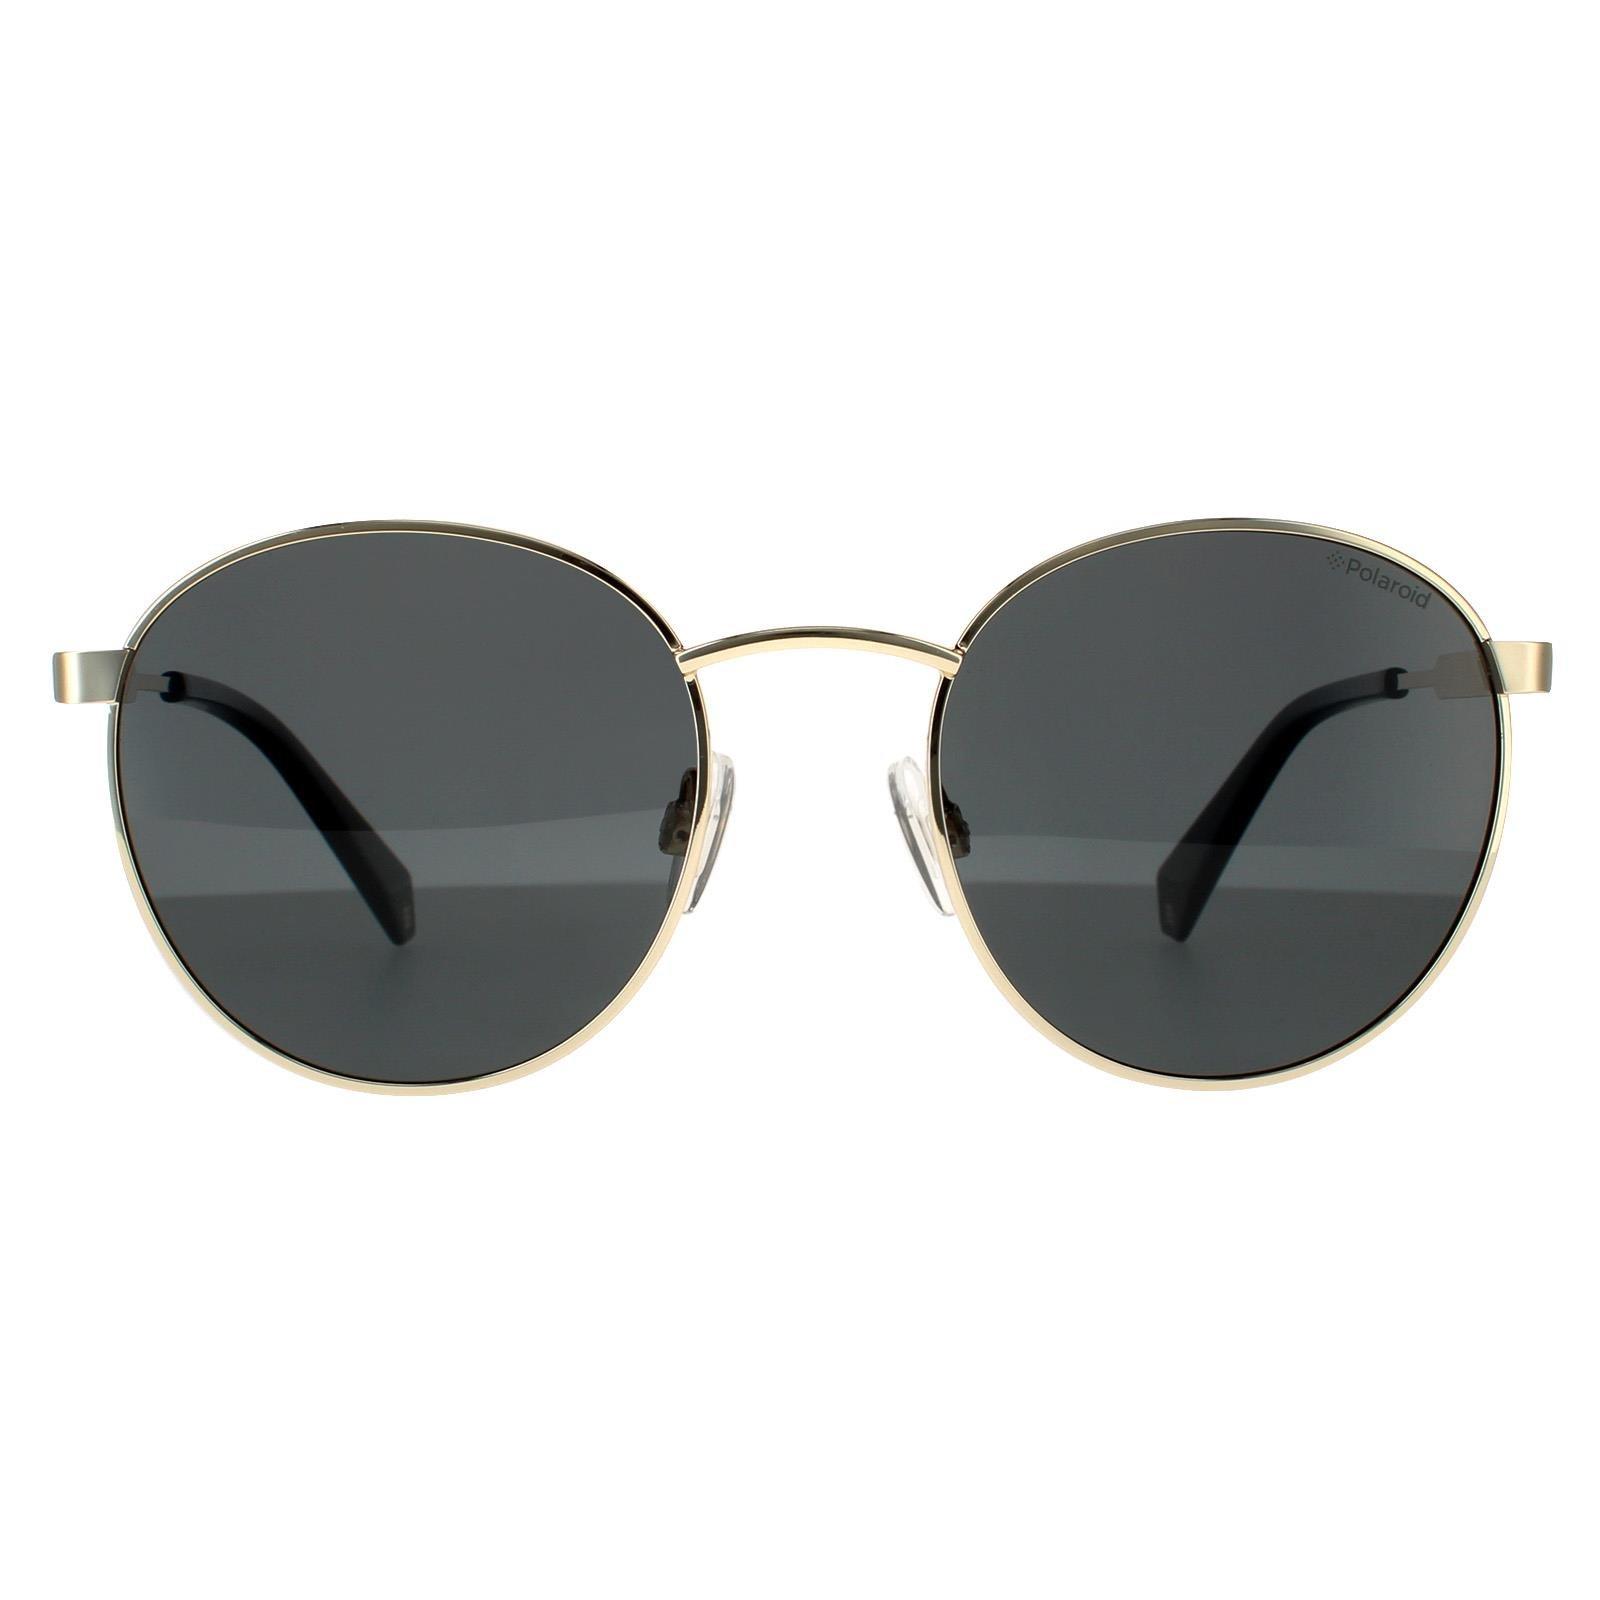 Круглые золотисто-серые серые поляризованные солнцезащитные очки Polaroid, золото polaroid pld 6107 s x 010 m9